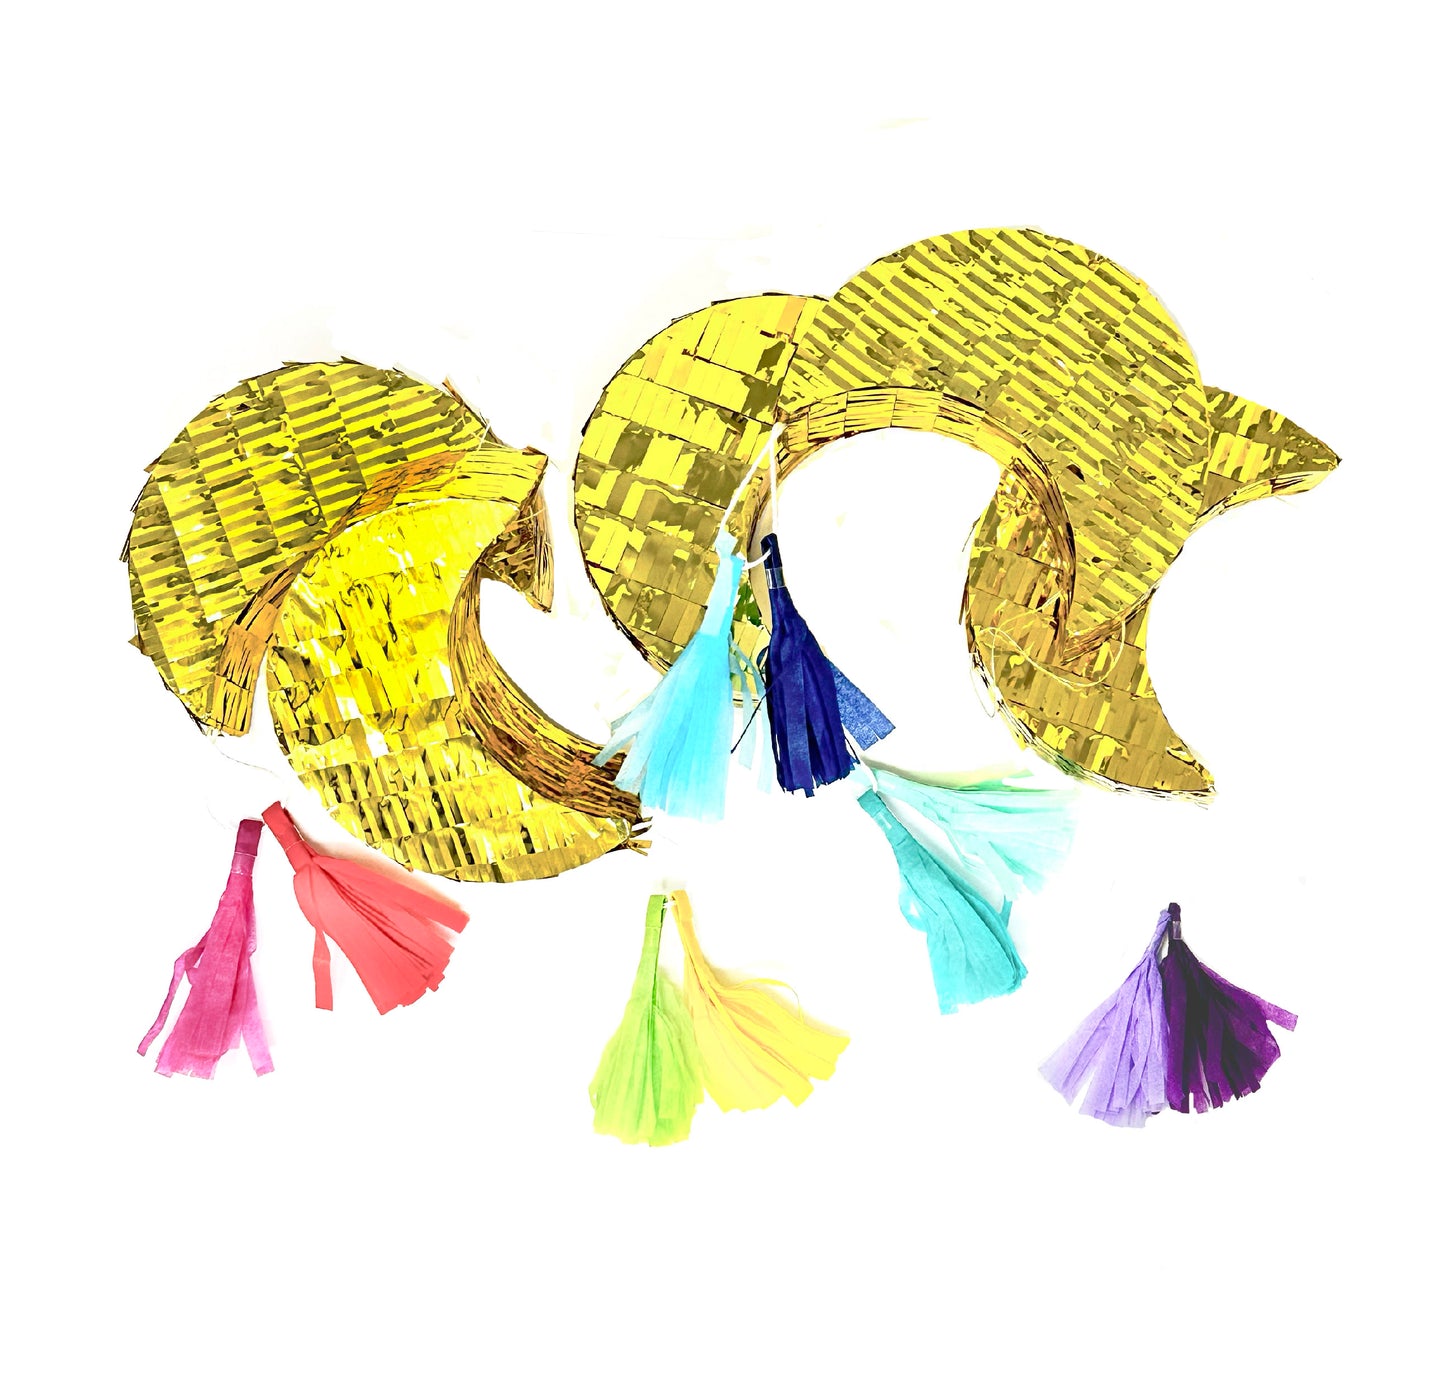 Eidi Moon Piñata -Gold Confetti filled